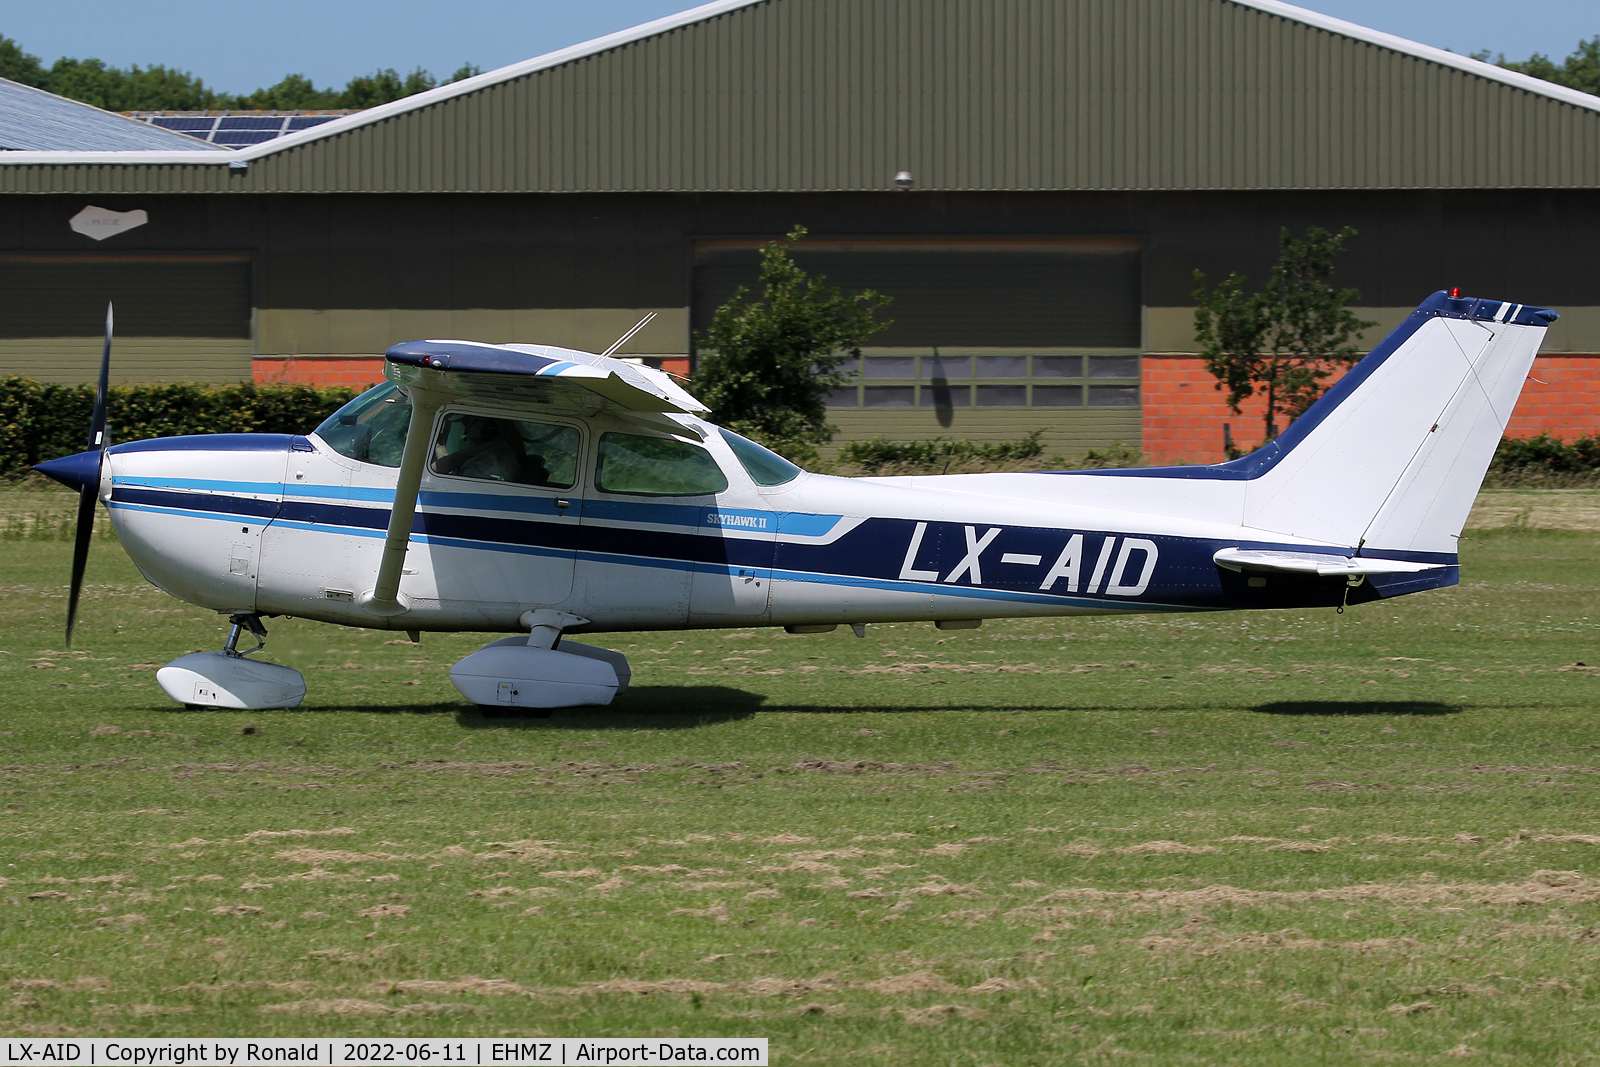 LX-AID, 1980 Reims F172N Skyhawk C/N 1972, at ehmz